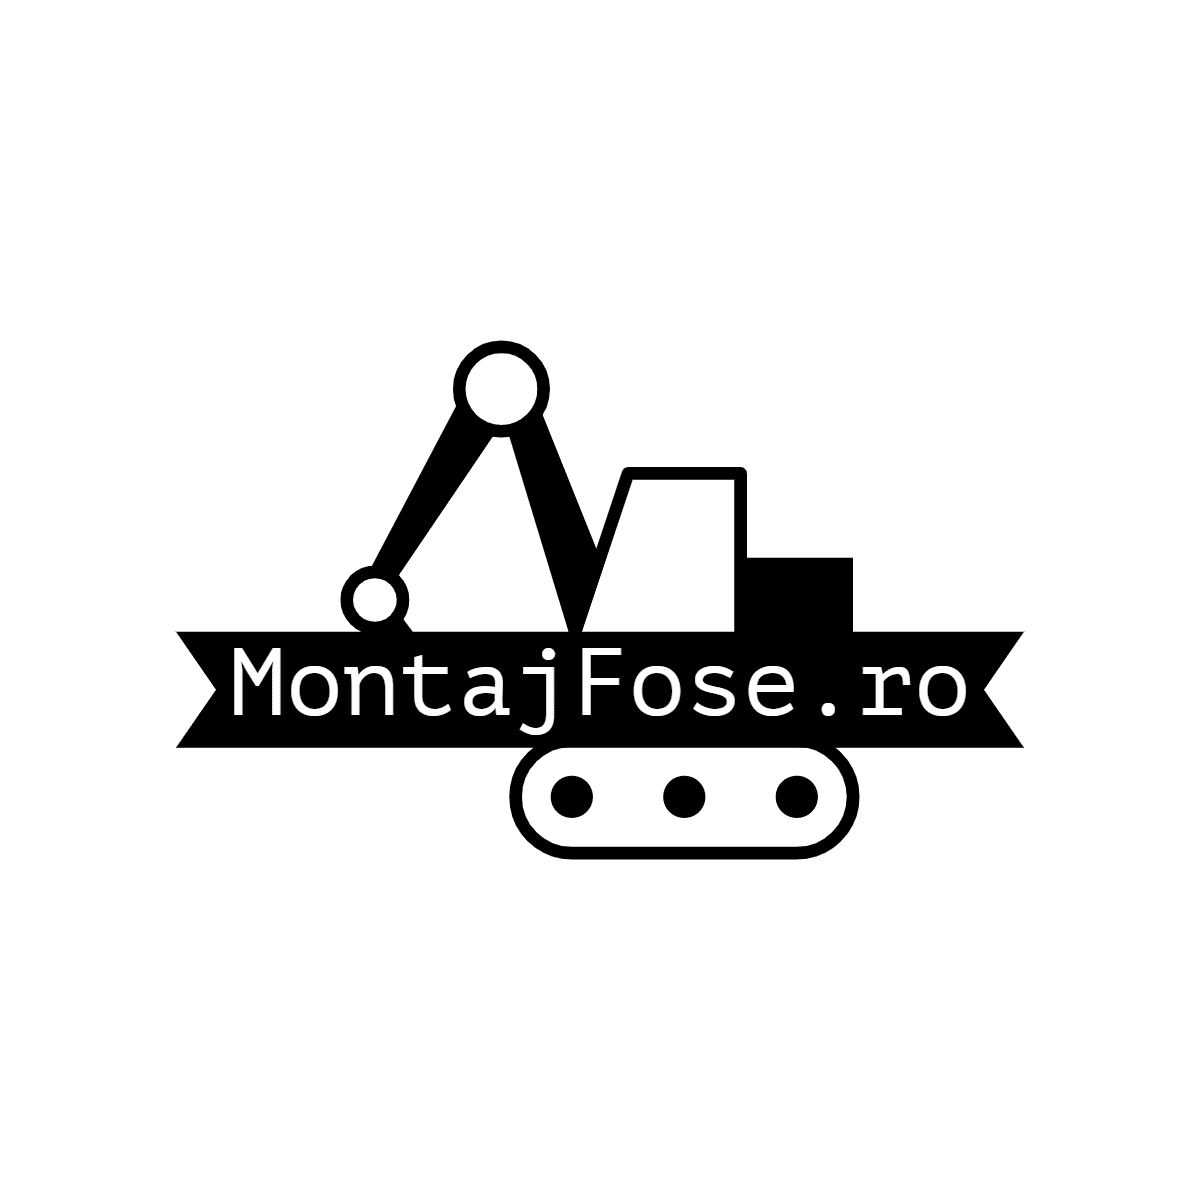 Montajfosero-logos black